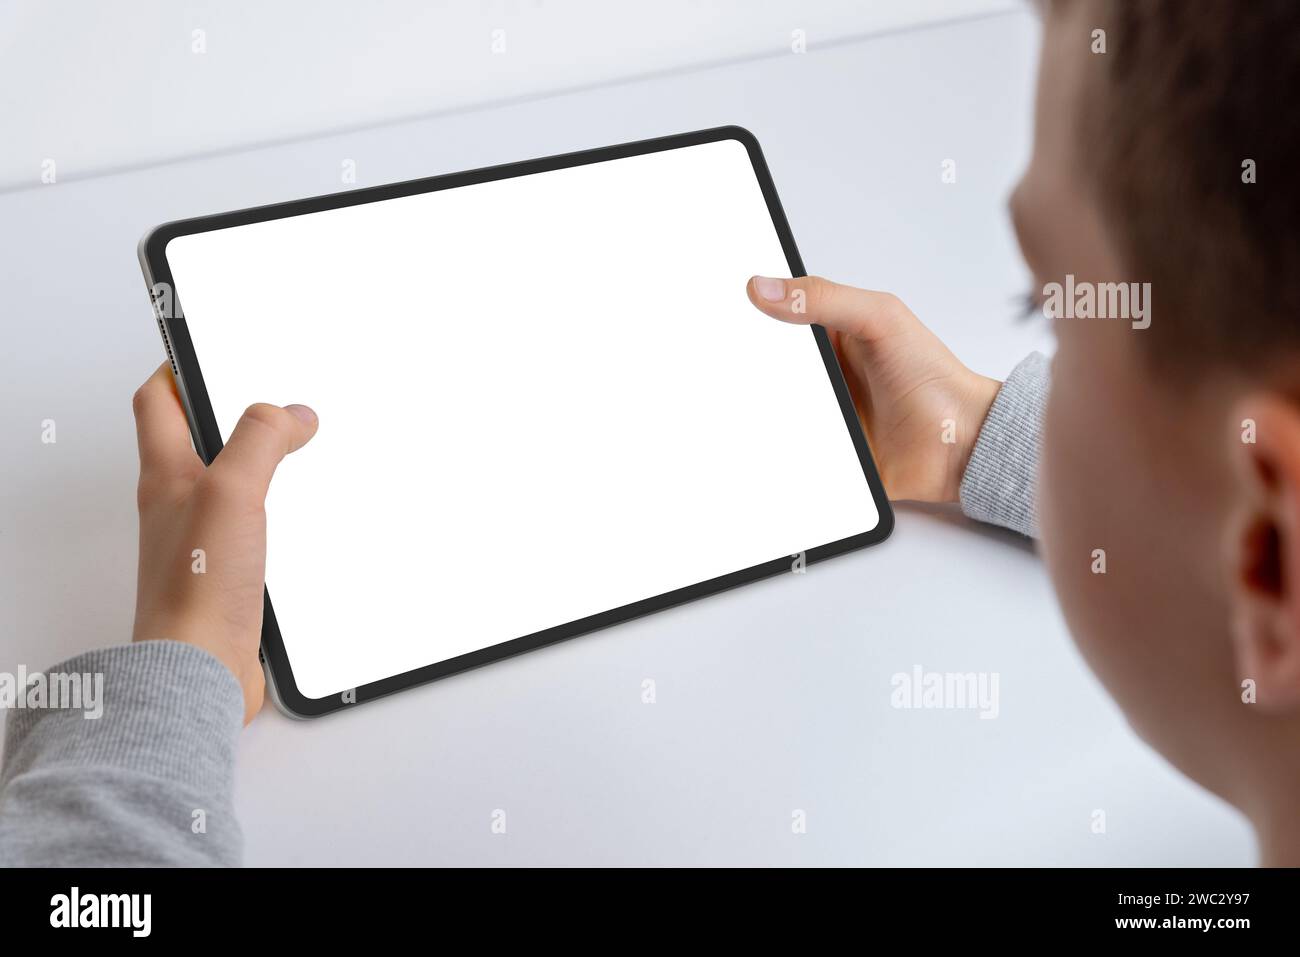 Nahaufnahme der Hände eines Jungen, der ein Tablet-Modell hält. Arbeiten, indem ein isolierter weißer Bildschirm für die App-Präsentation präsentiert wird. Moderne Technik bei Kindern Stockfoto